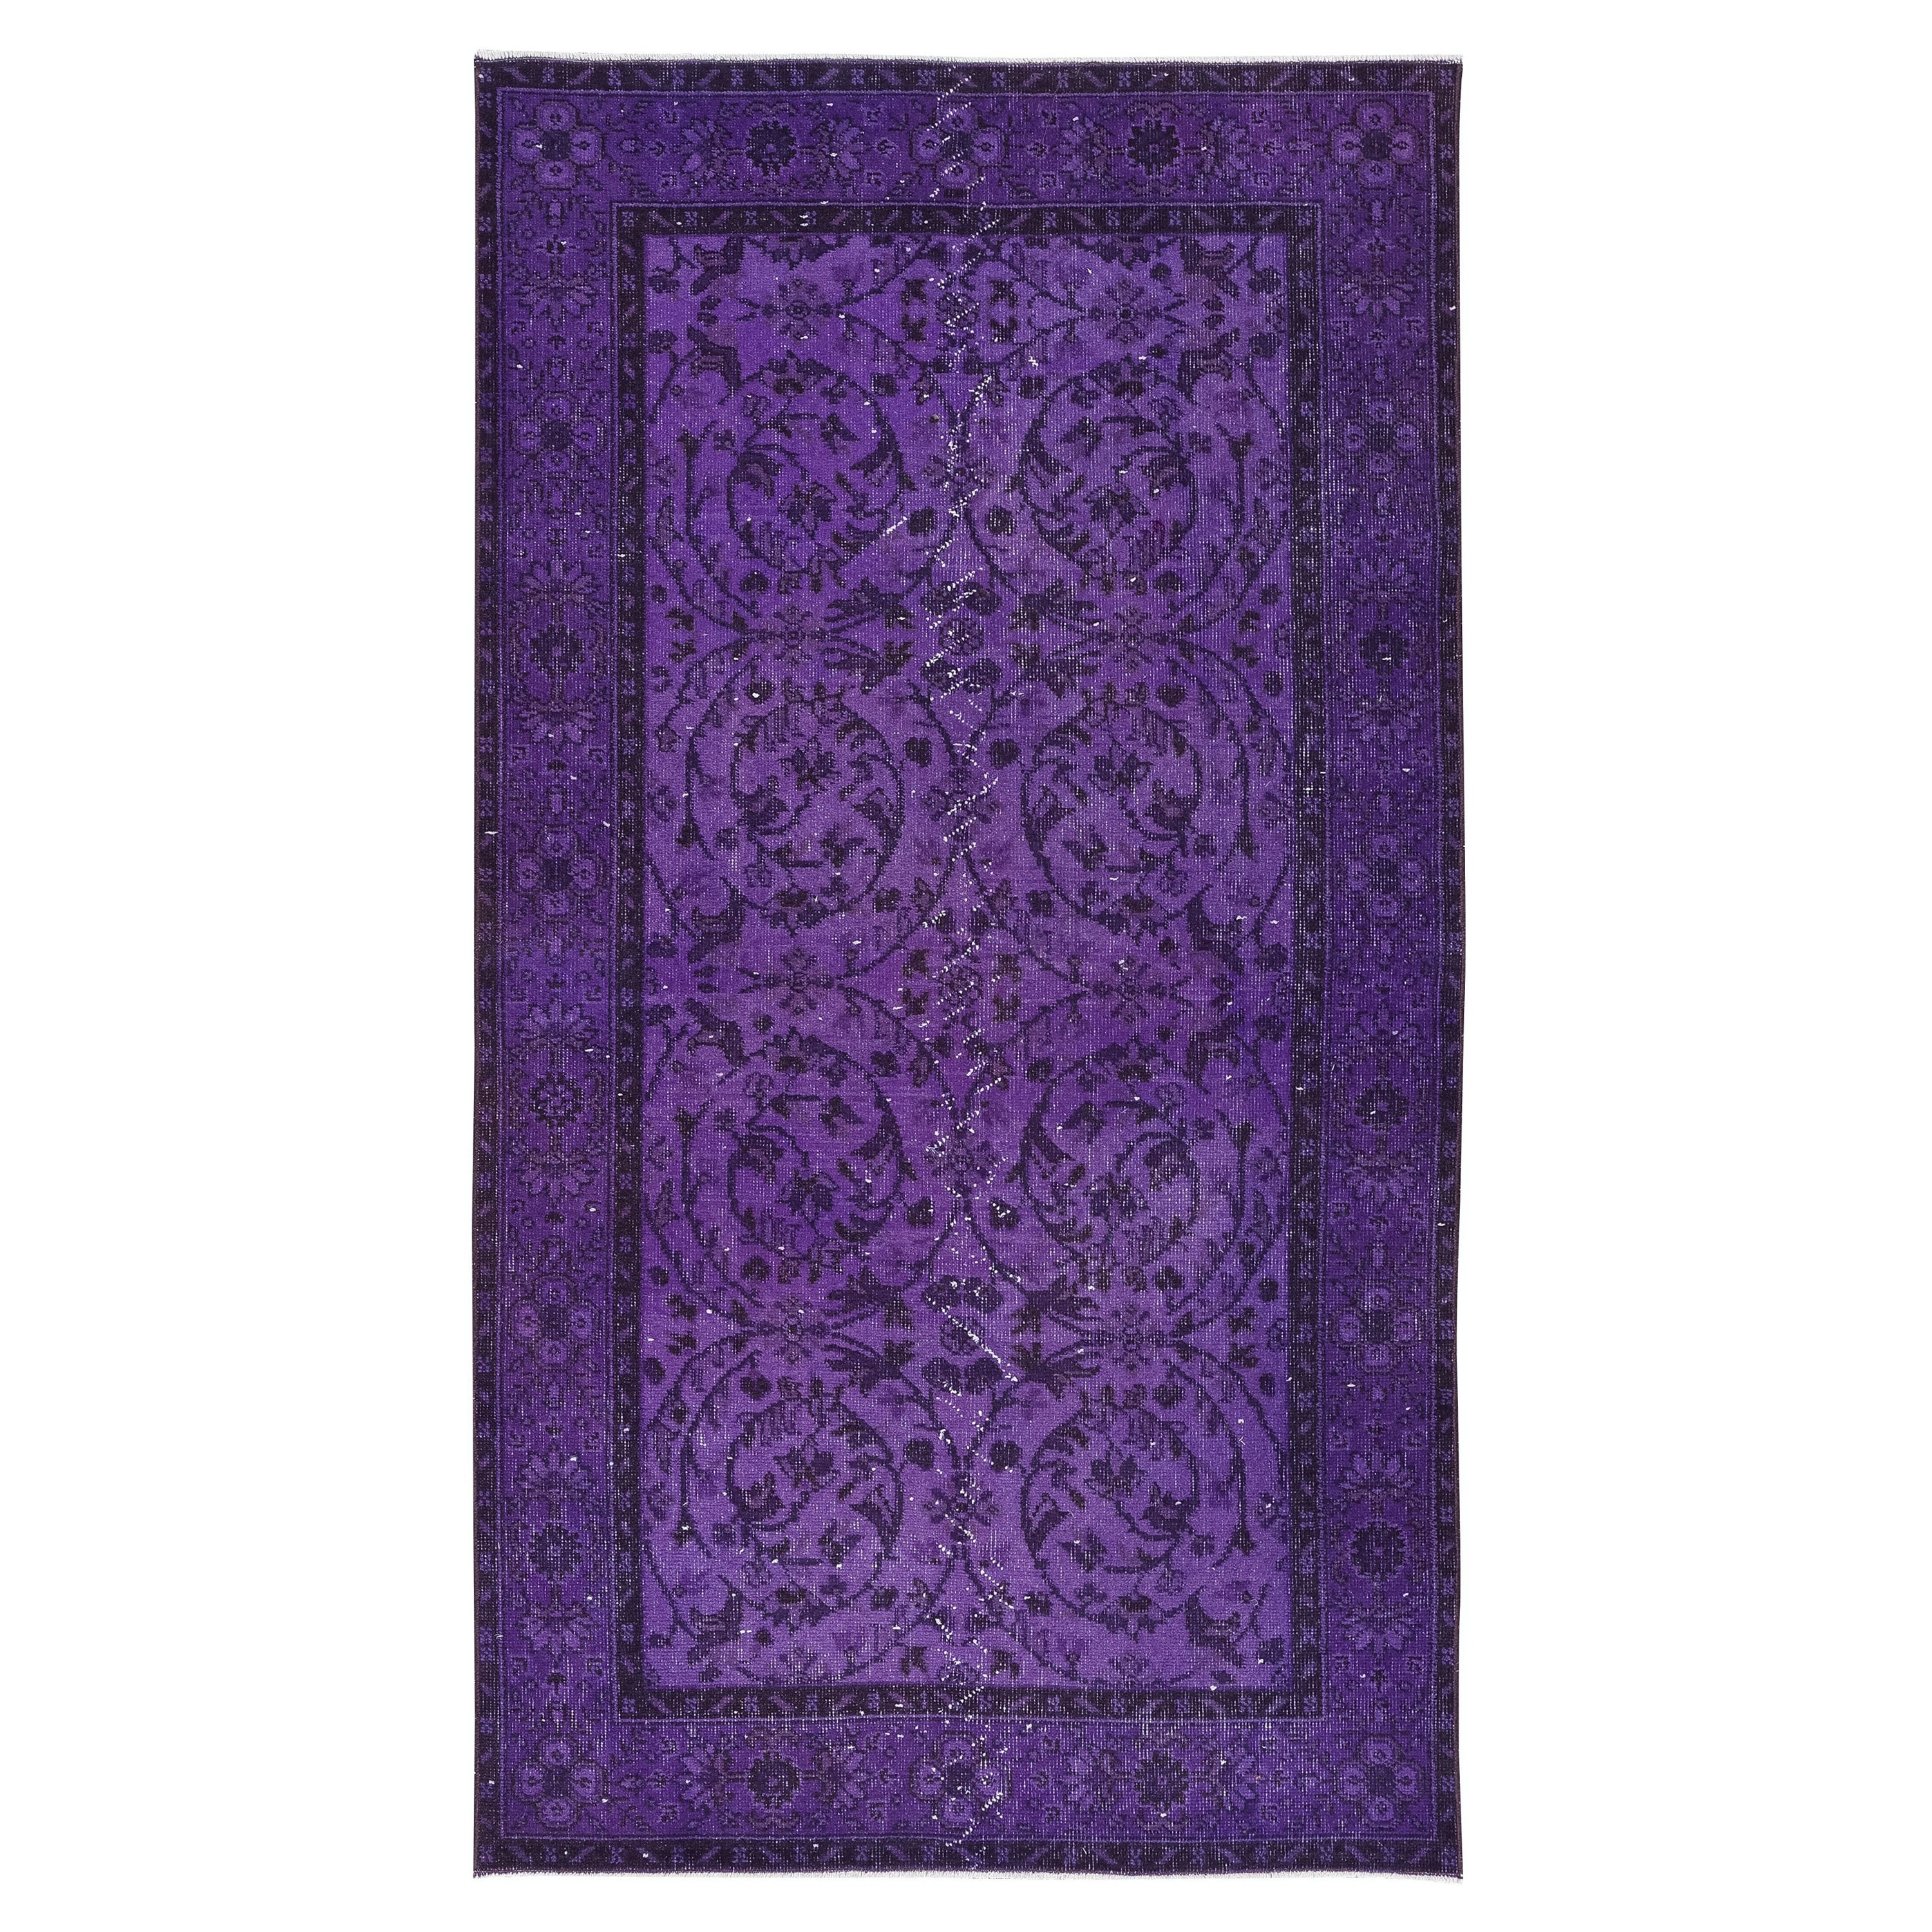 3.8x6,8 Ft Handgeknüpfter moderner Violett-lila-Teppich aus Isparta, Türkei